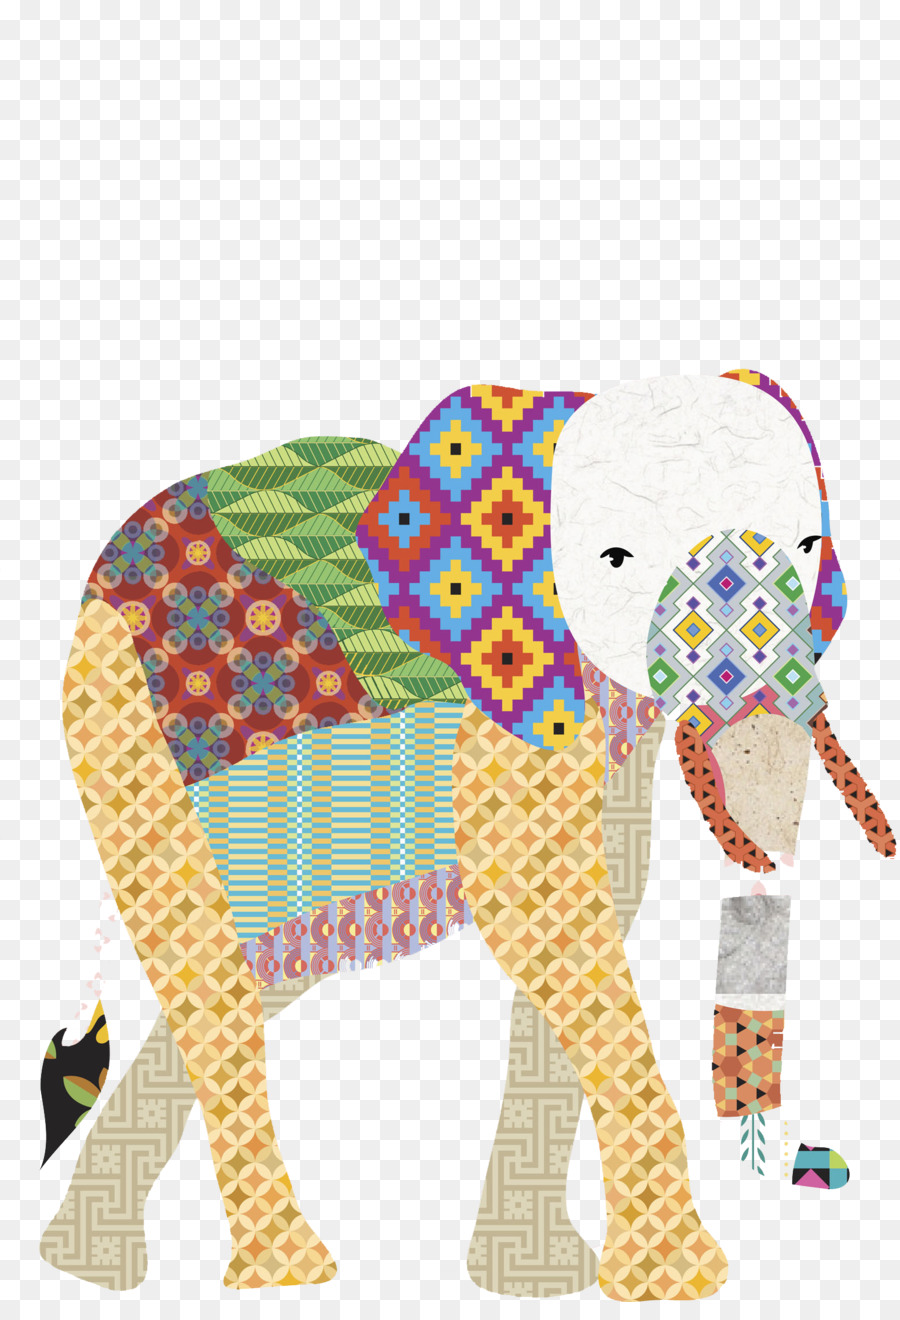 La pittura ad acquerello Elefante - acquerello elefante